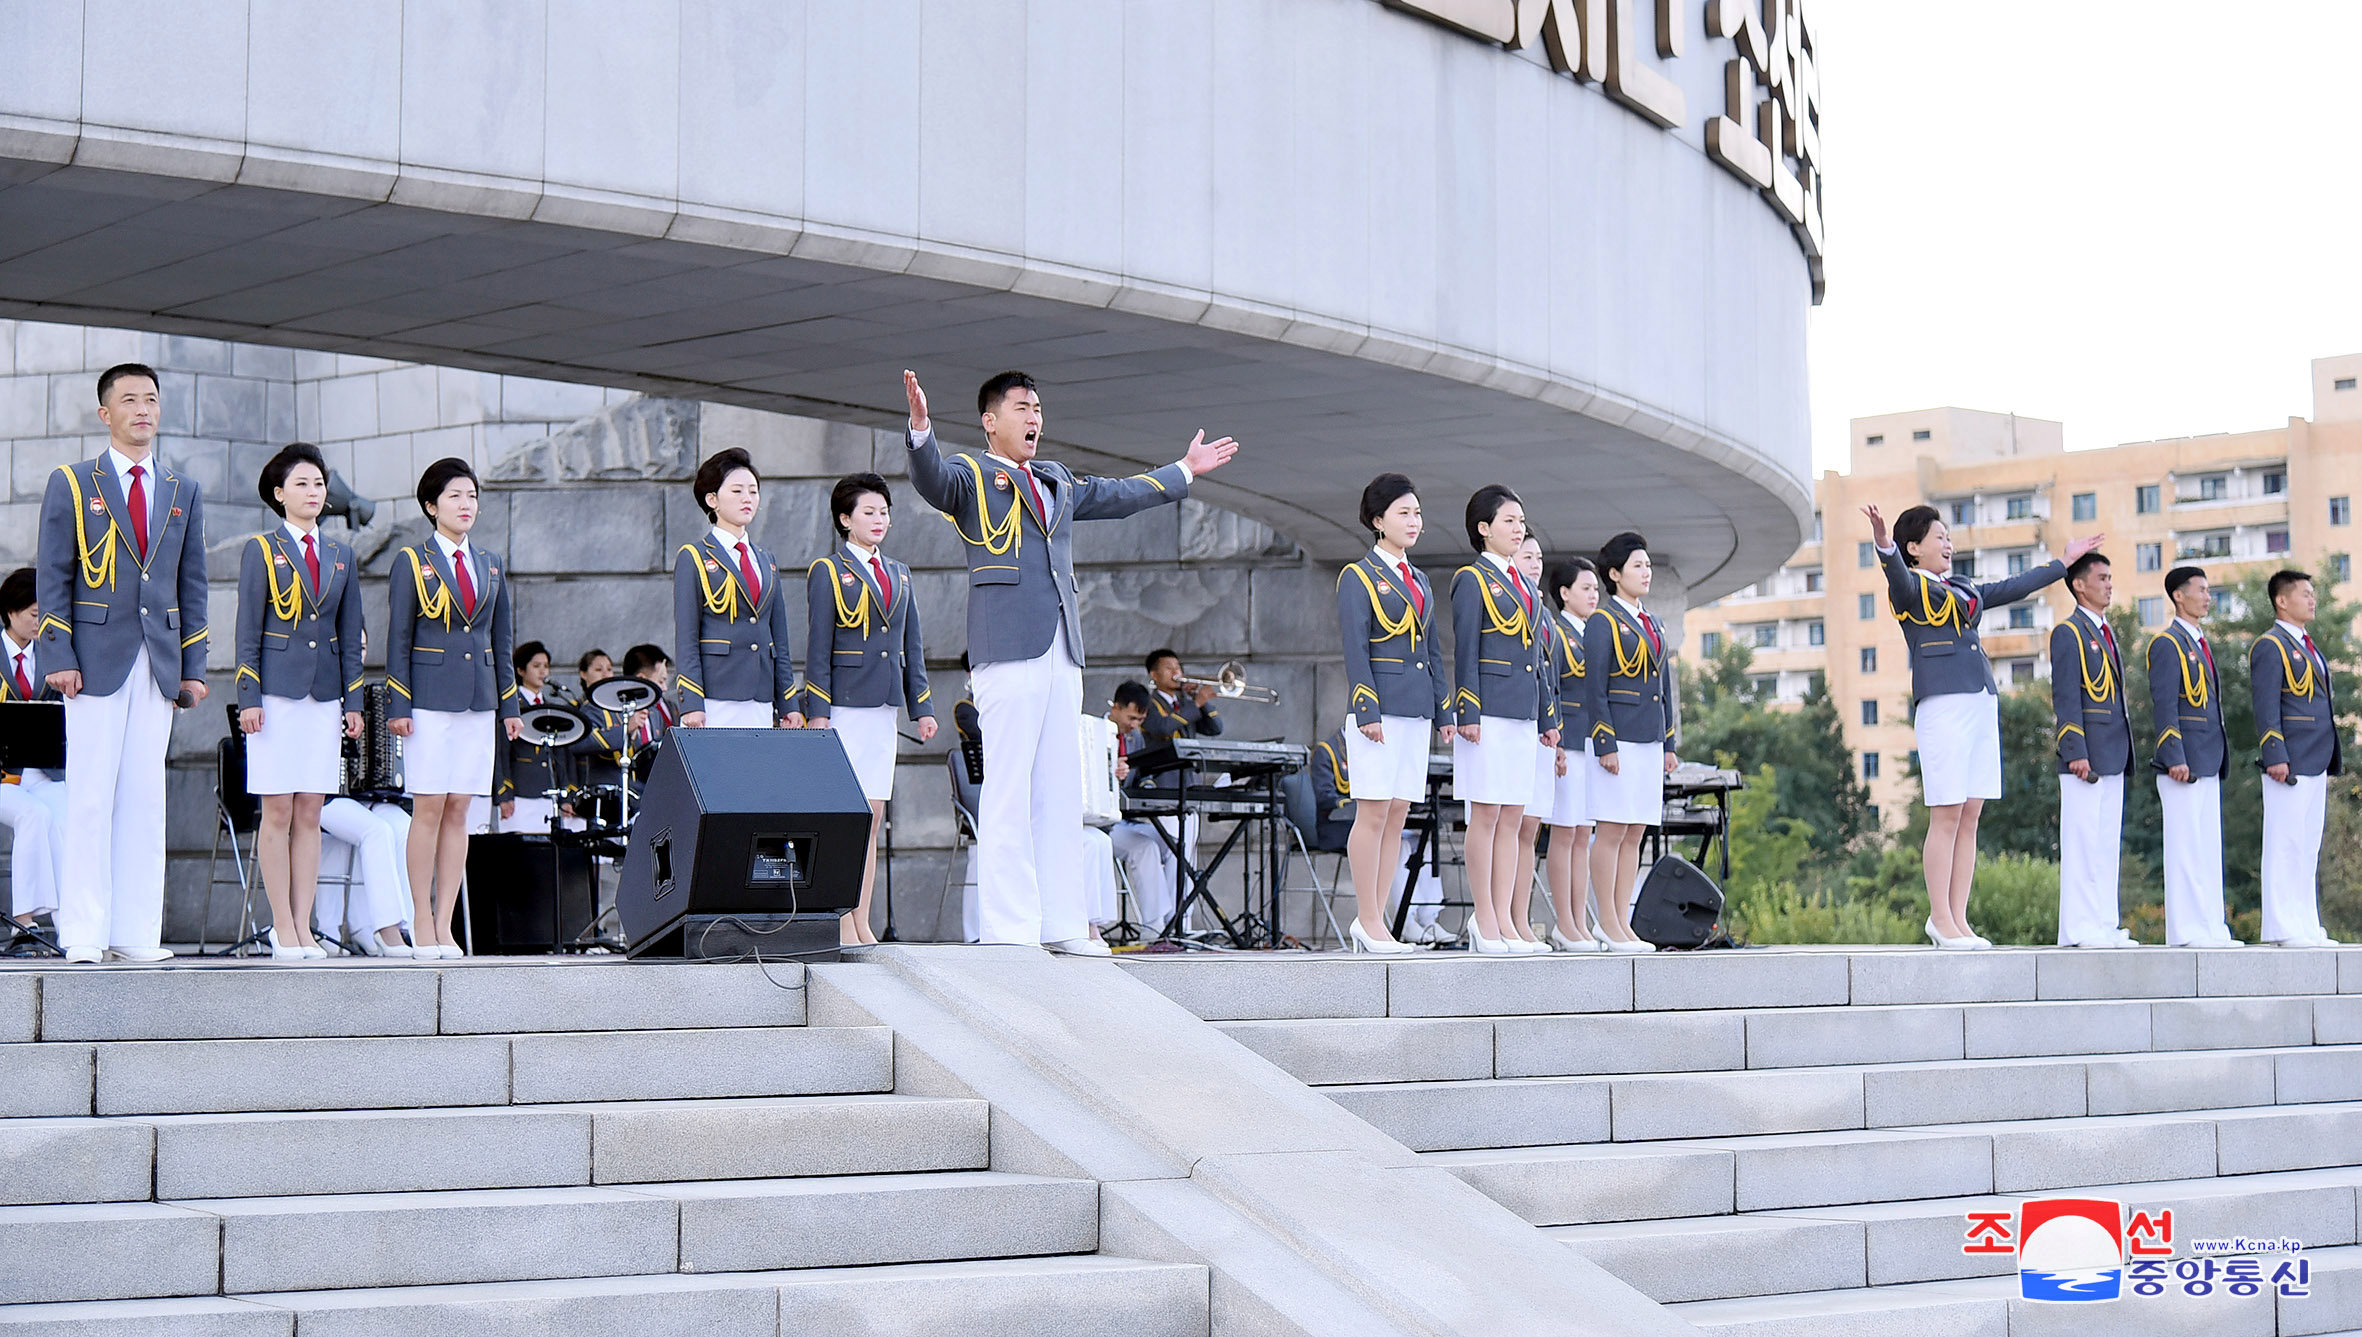 فريق غنائي يحى احتفالات كوريا الشمالية بذكرى تأسيس الحزب الحاكم